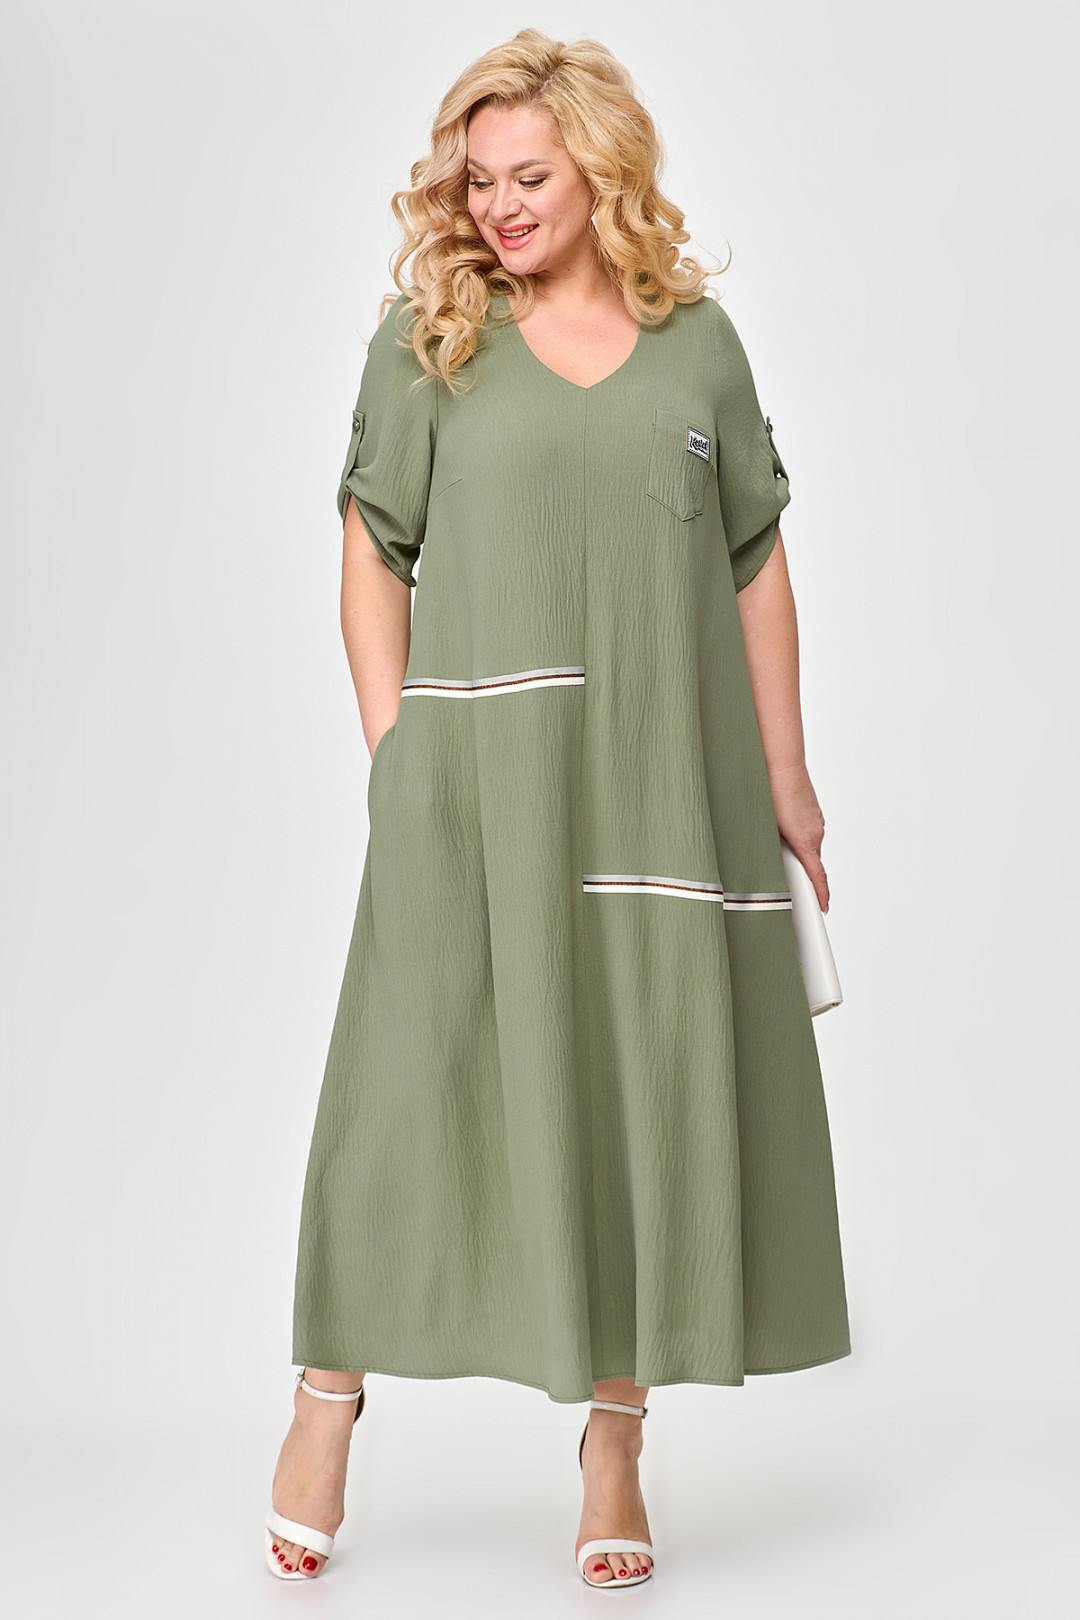 Платье ALGRANDA (Новелла Шарм) A3686-6-4